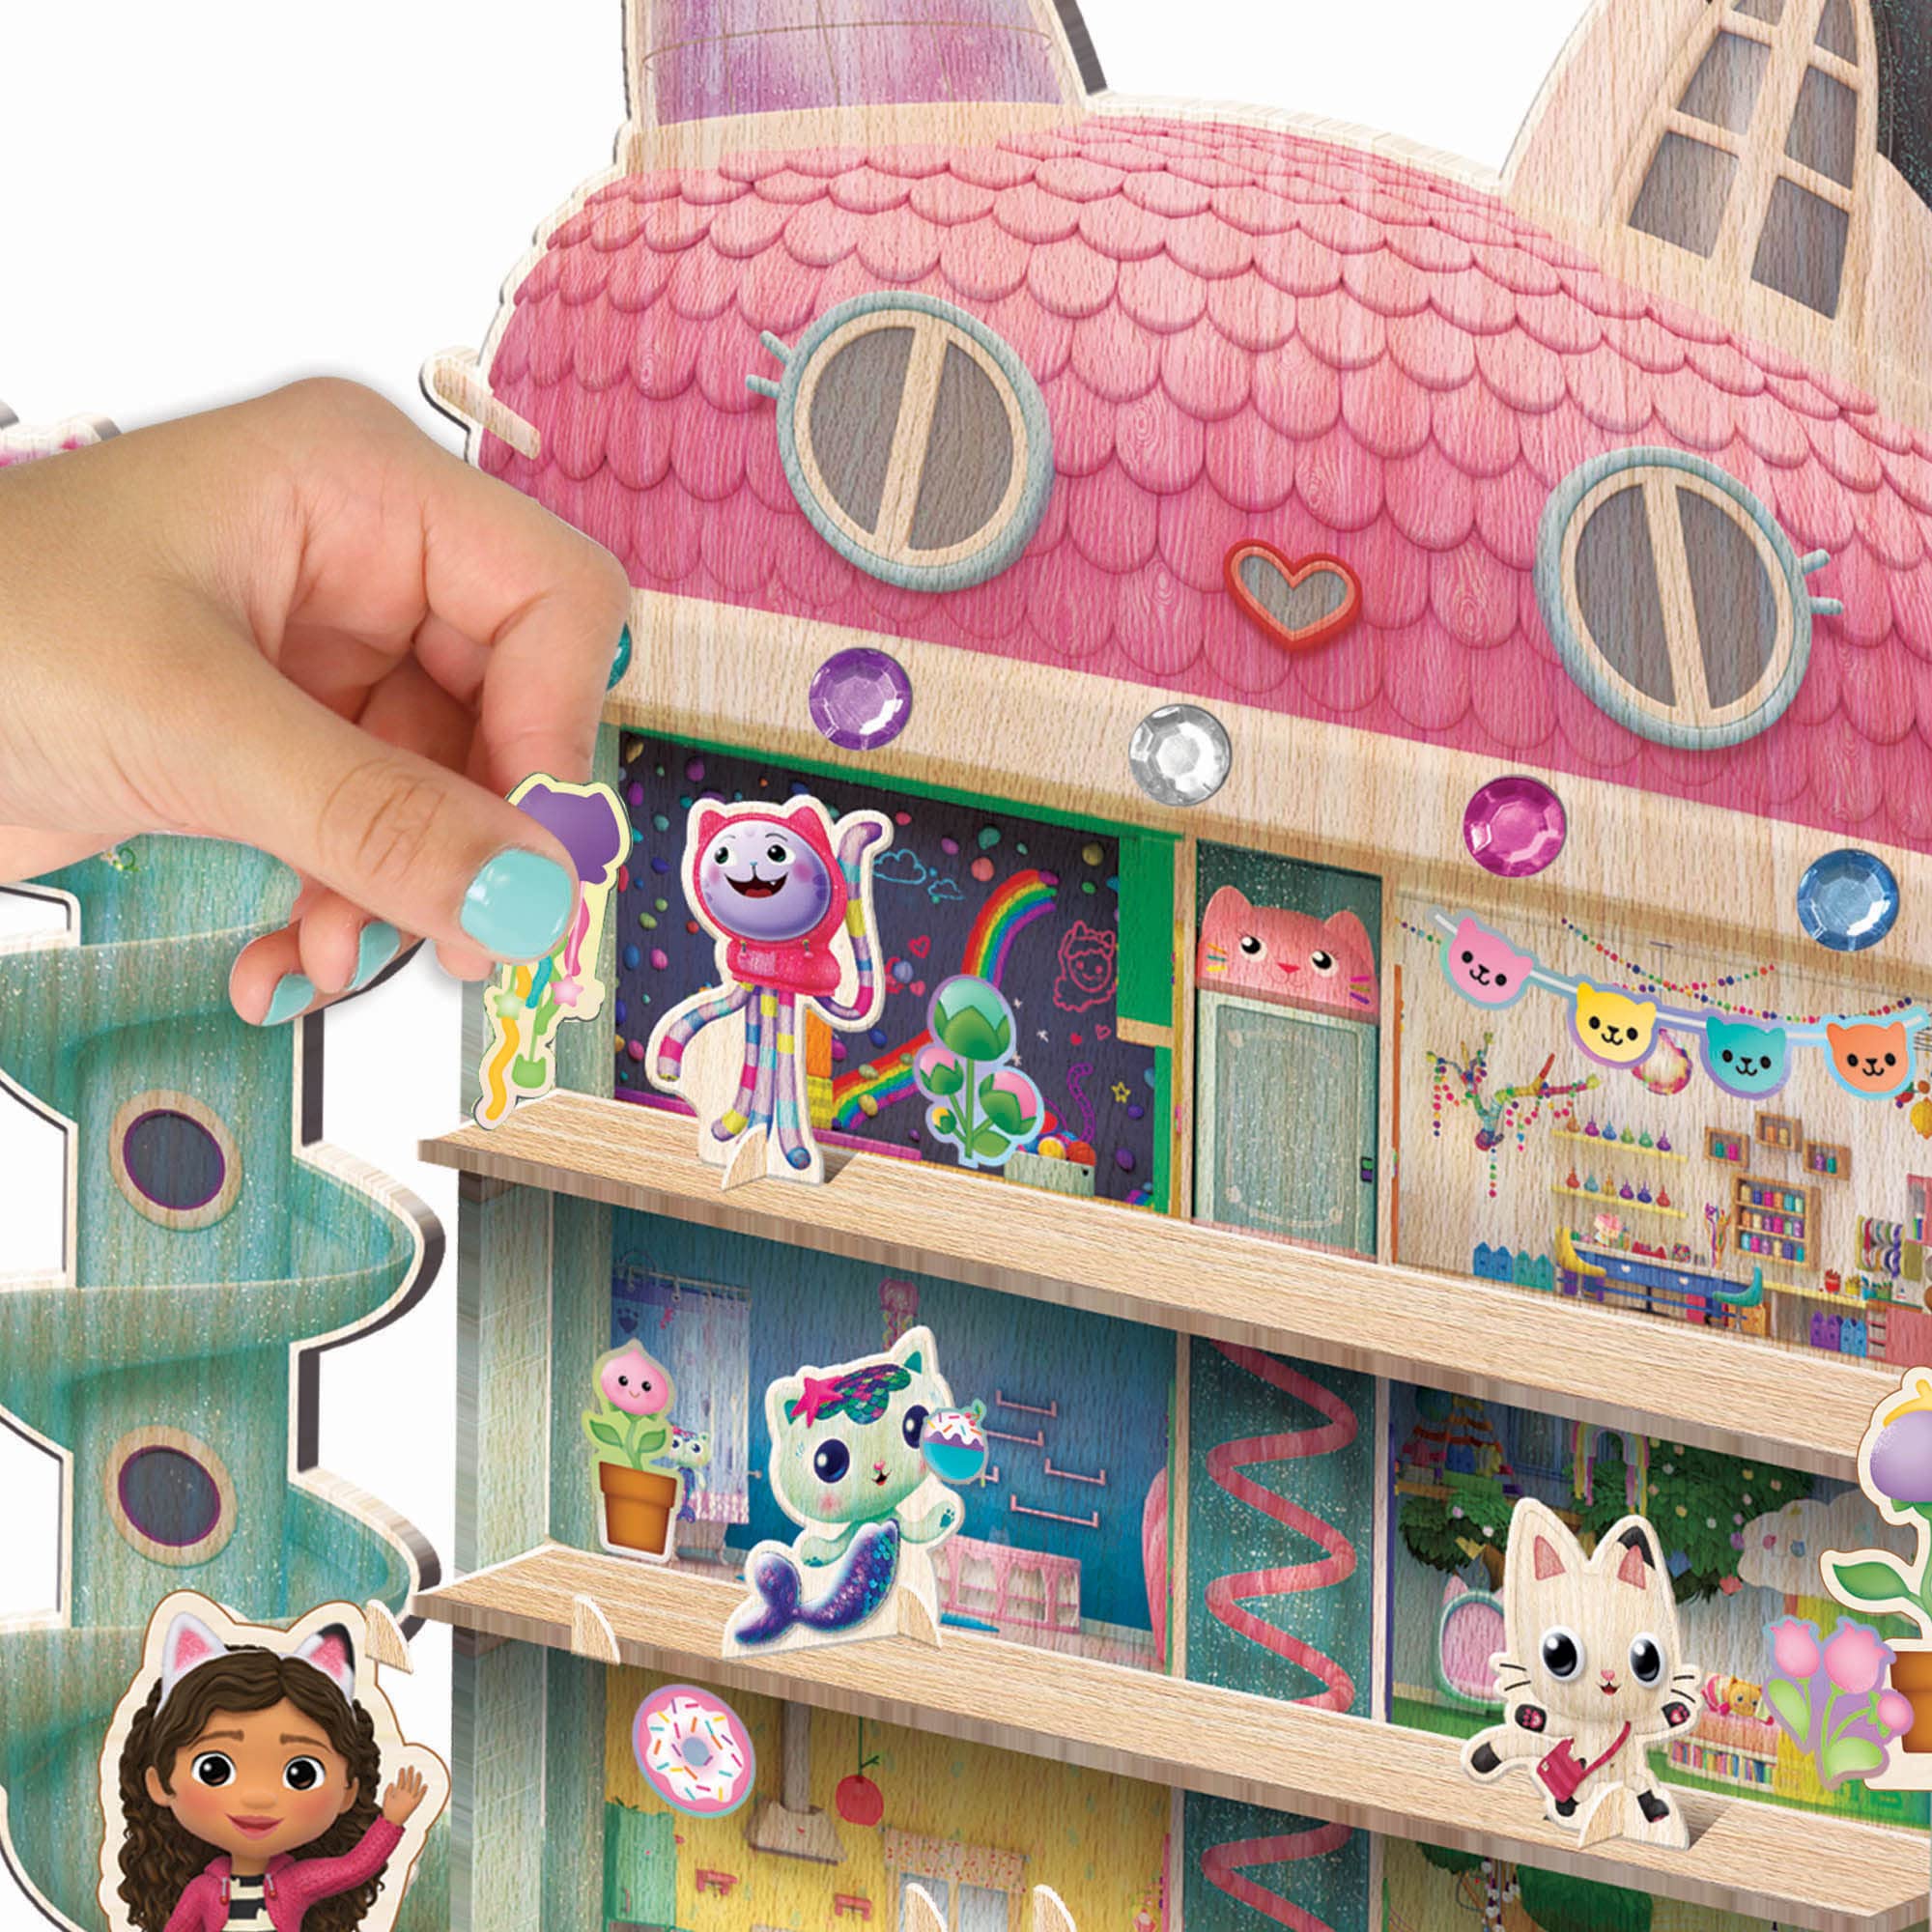 Tara Toys Gabby's Dollhouse: Wood Dollhouse Activity - Building & Decorating Set, Ages 3+